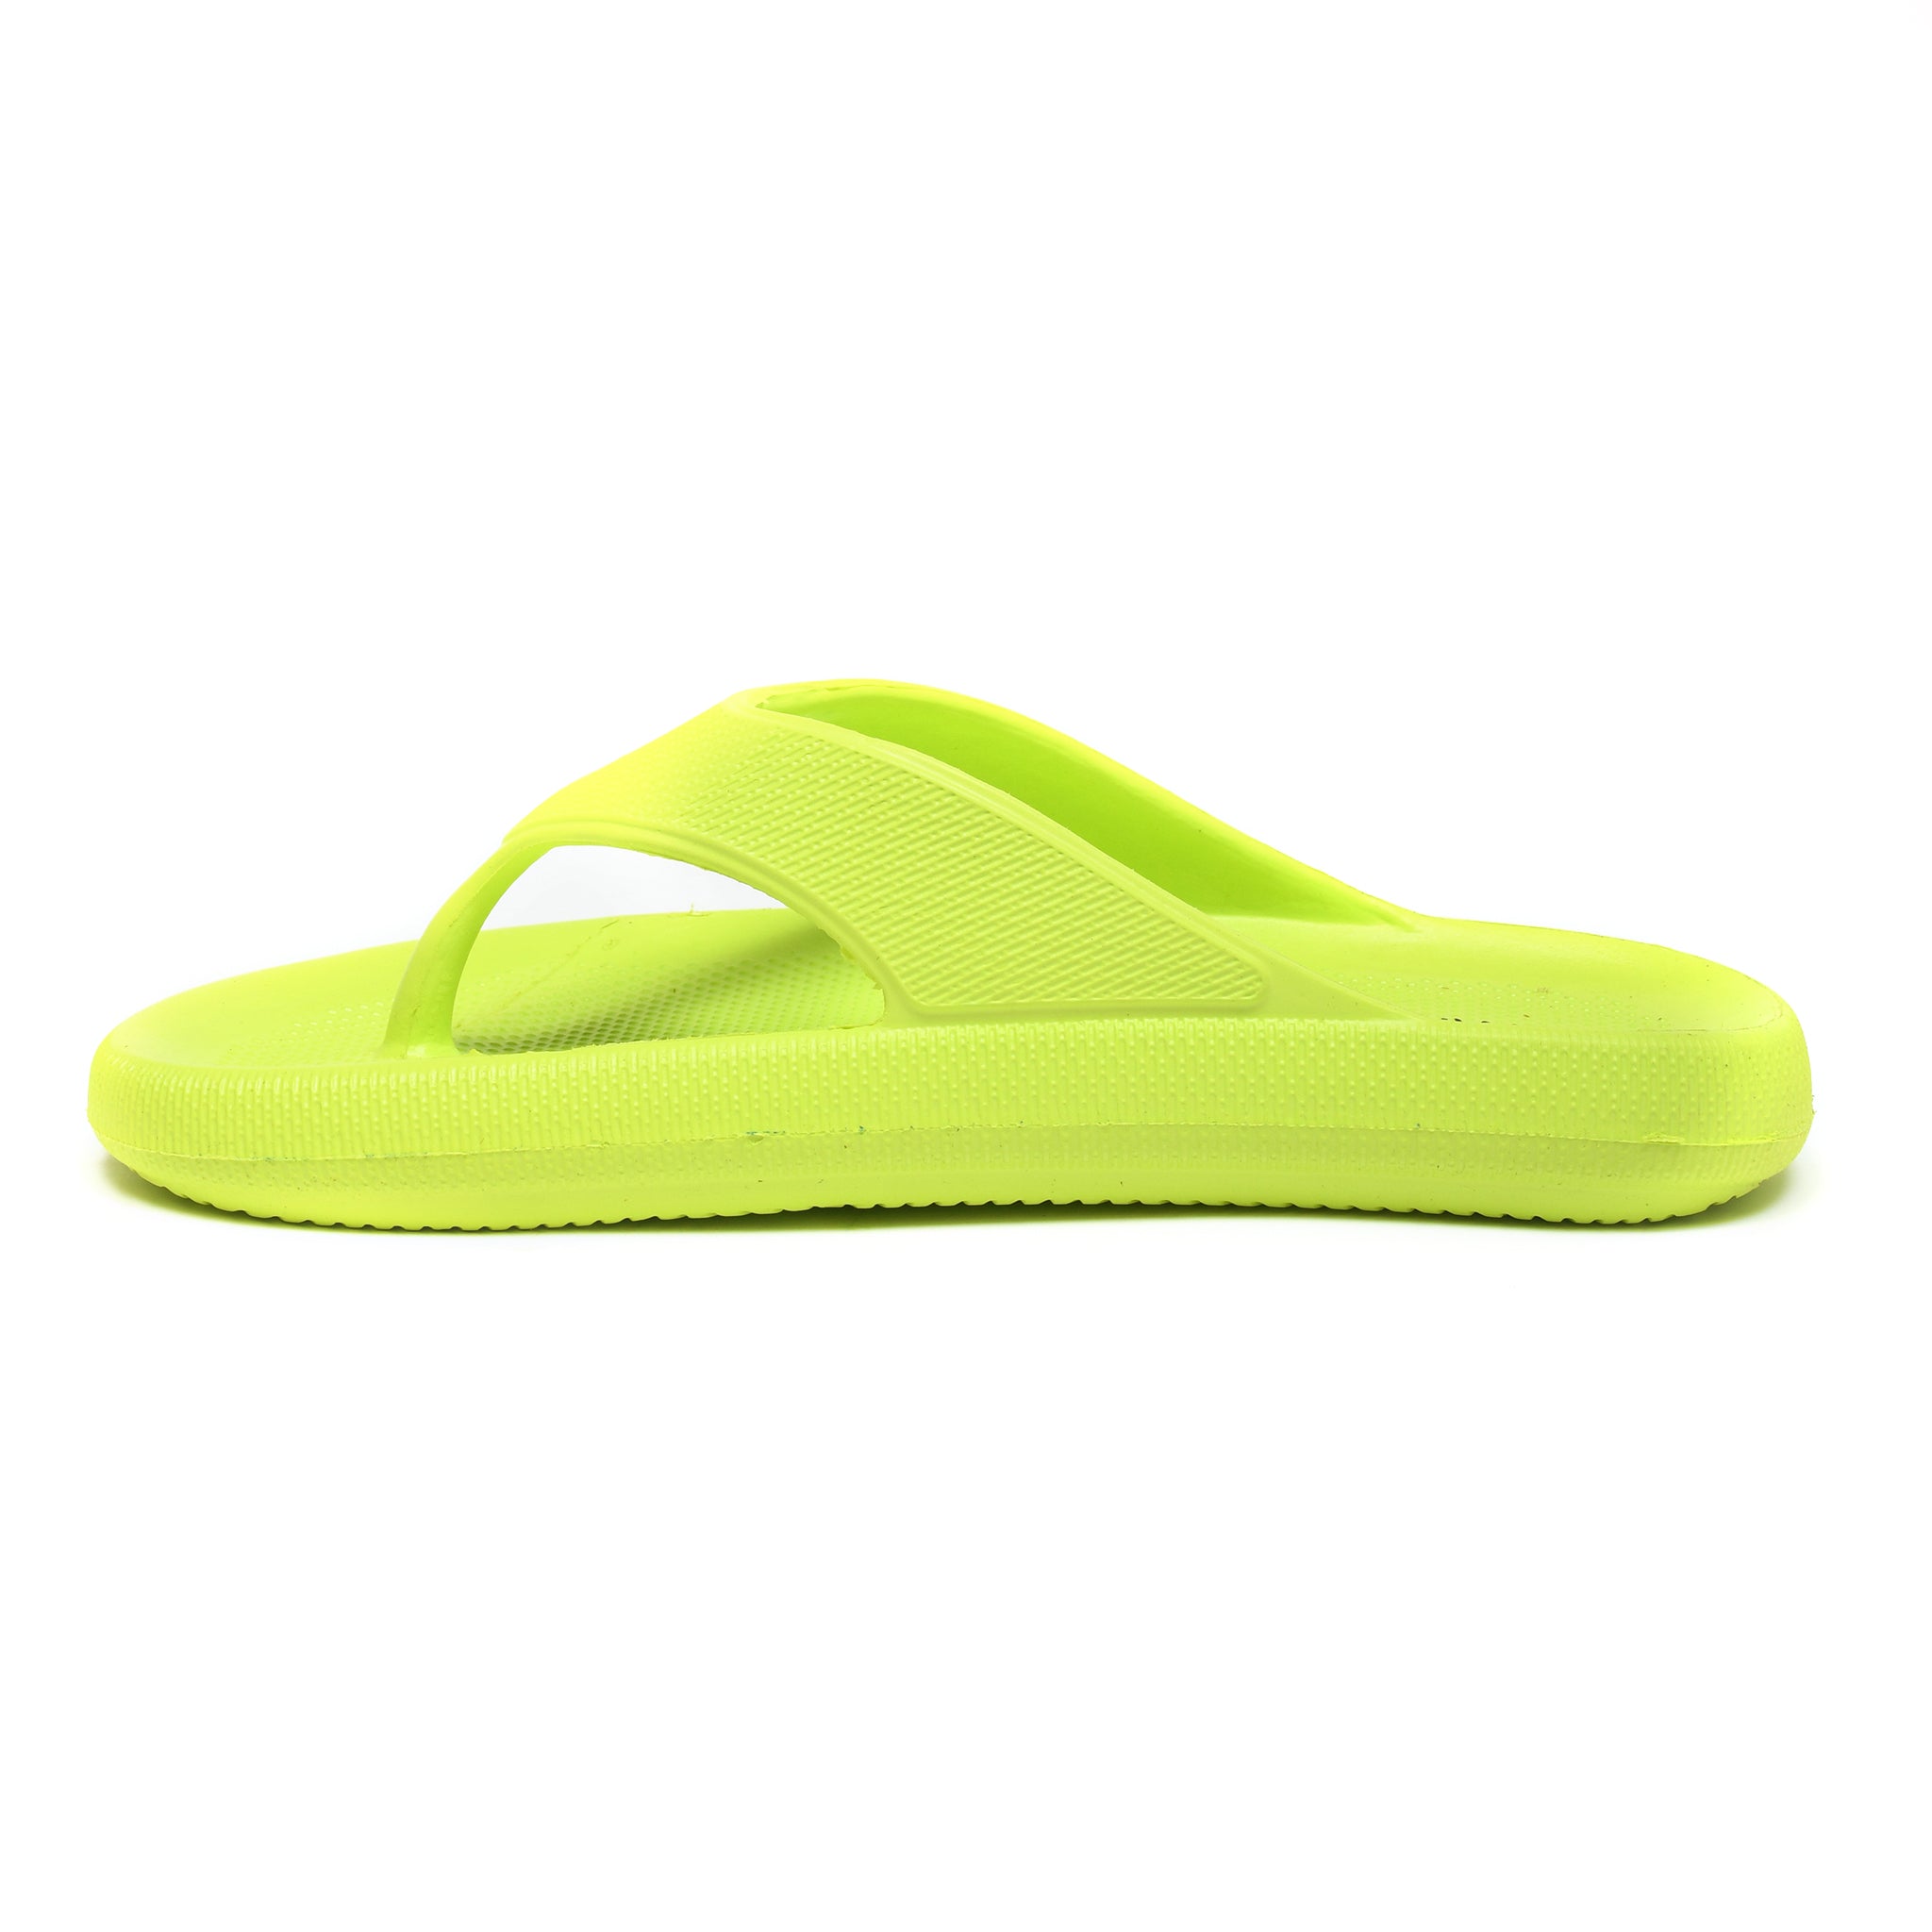 Impakto Women's Green Slipper